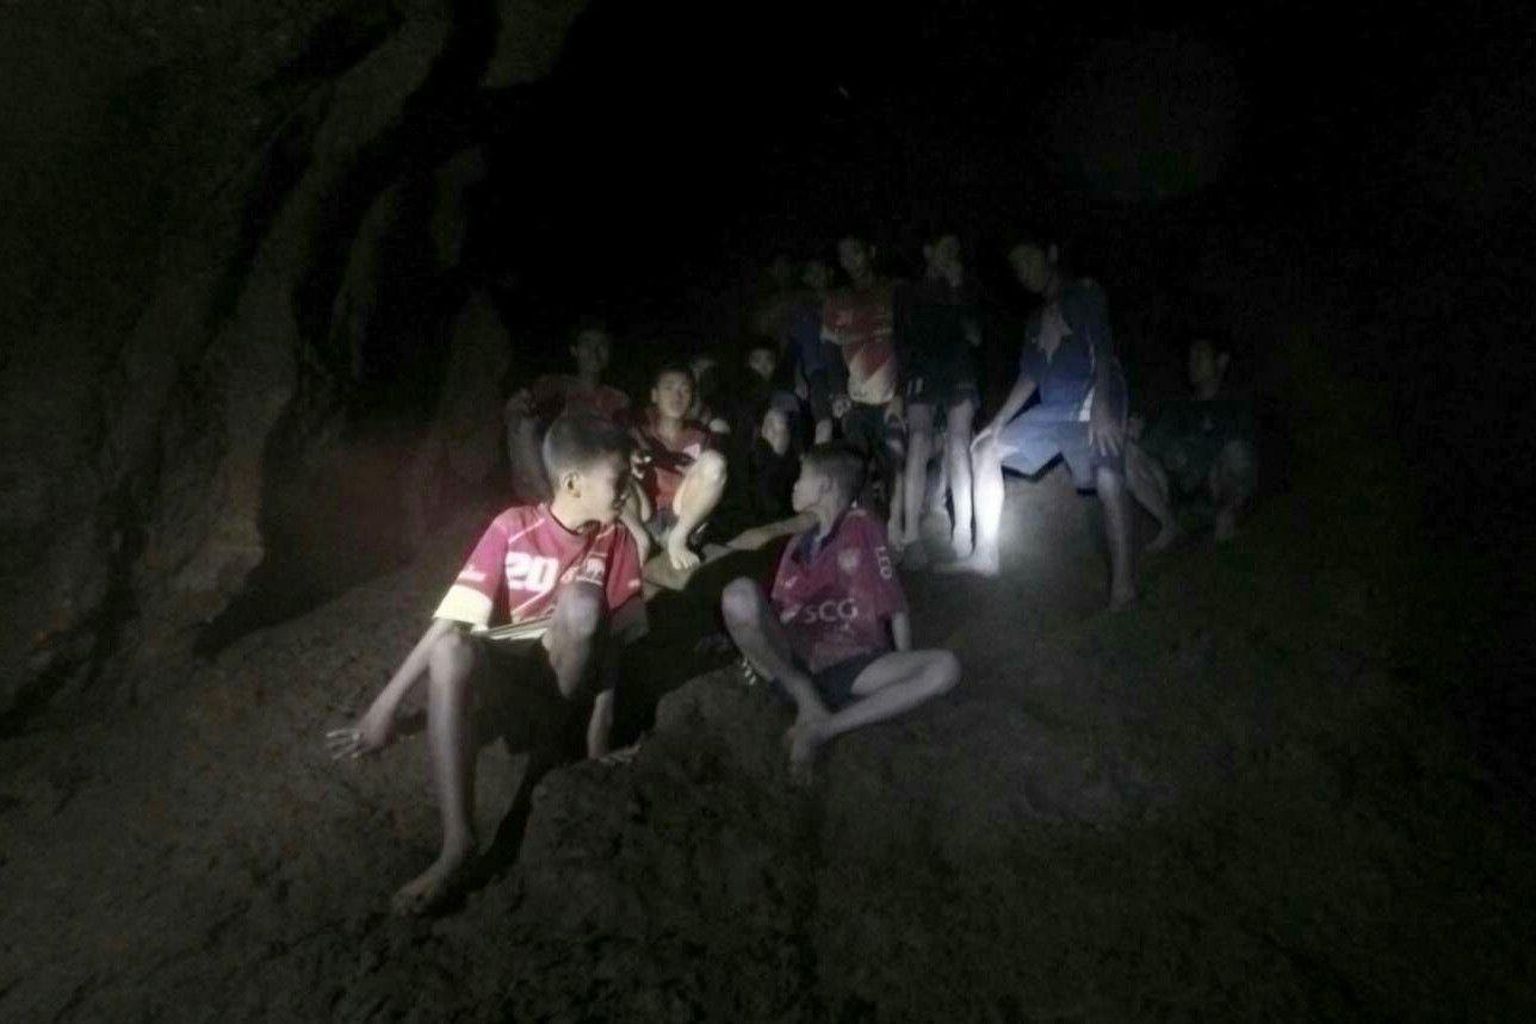 Esimesena jõudsid üleeile õhtul üheksa päeva Tai põhjaosas asuvas koopas veetnud 12 poisi ja nende treenerini Briti sukeldujad. Kuigi lapsed on kõhnad ja räsitud, on enamik neist katsumusele hästi vastu pidanud.